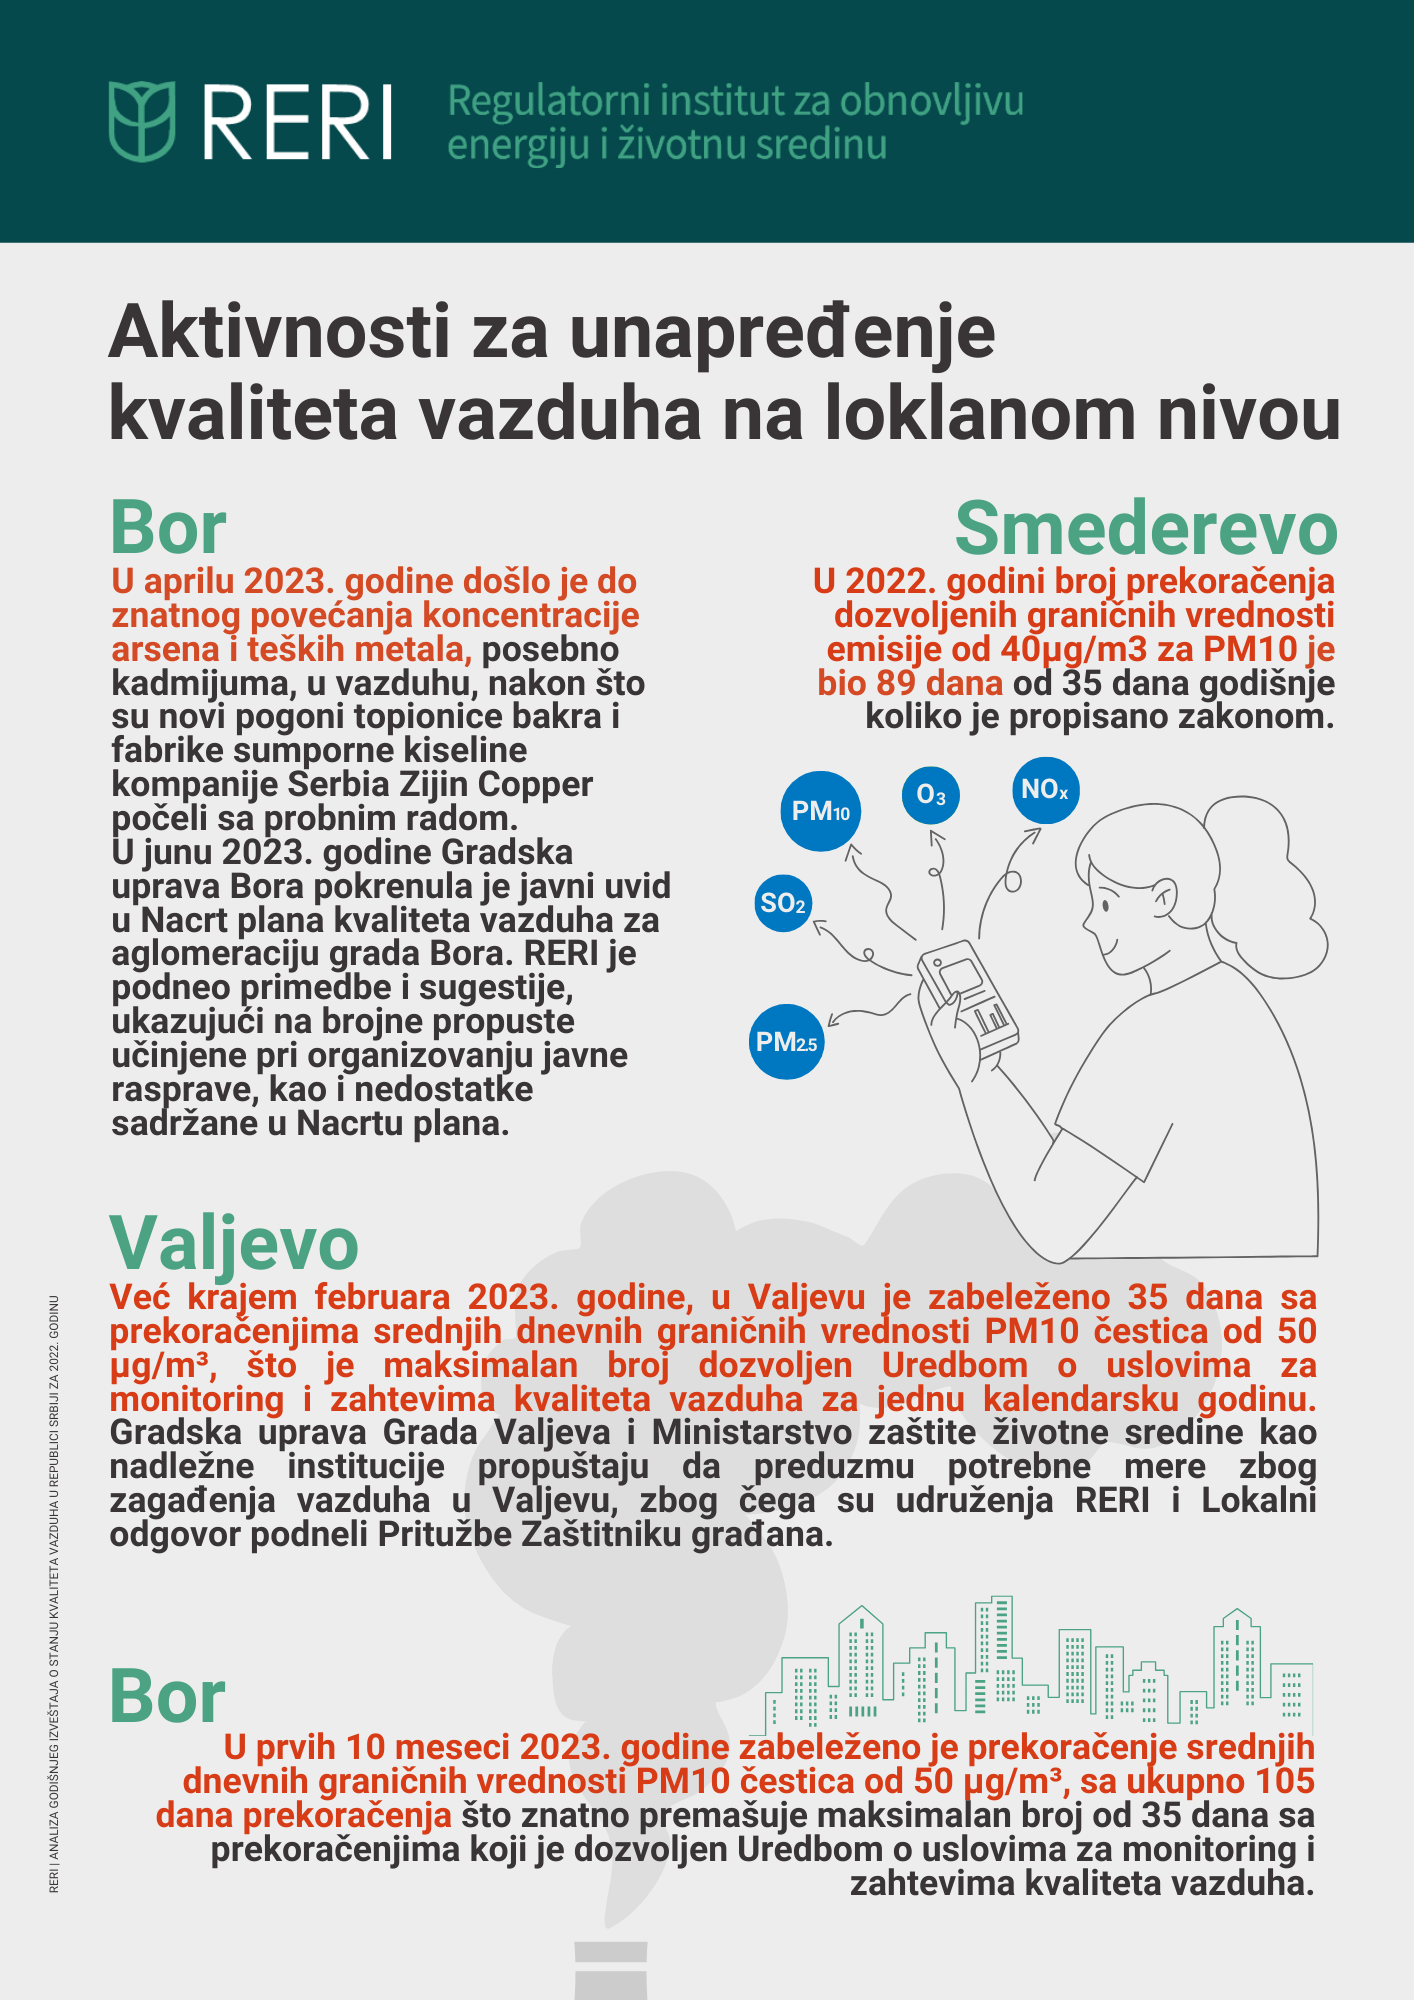 Više od četiri miliona ljudi u Srbiji živi u mestima sa prekomerno zagađenim vazduhom, mnogi nisu ni bili obavešteni 4